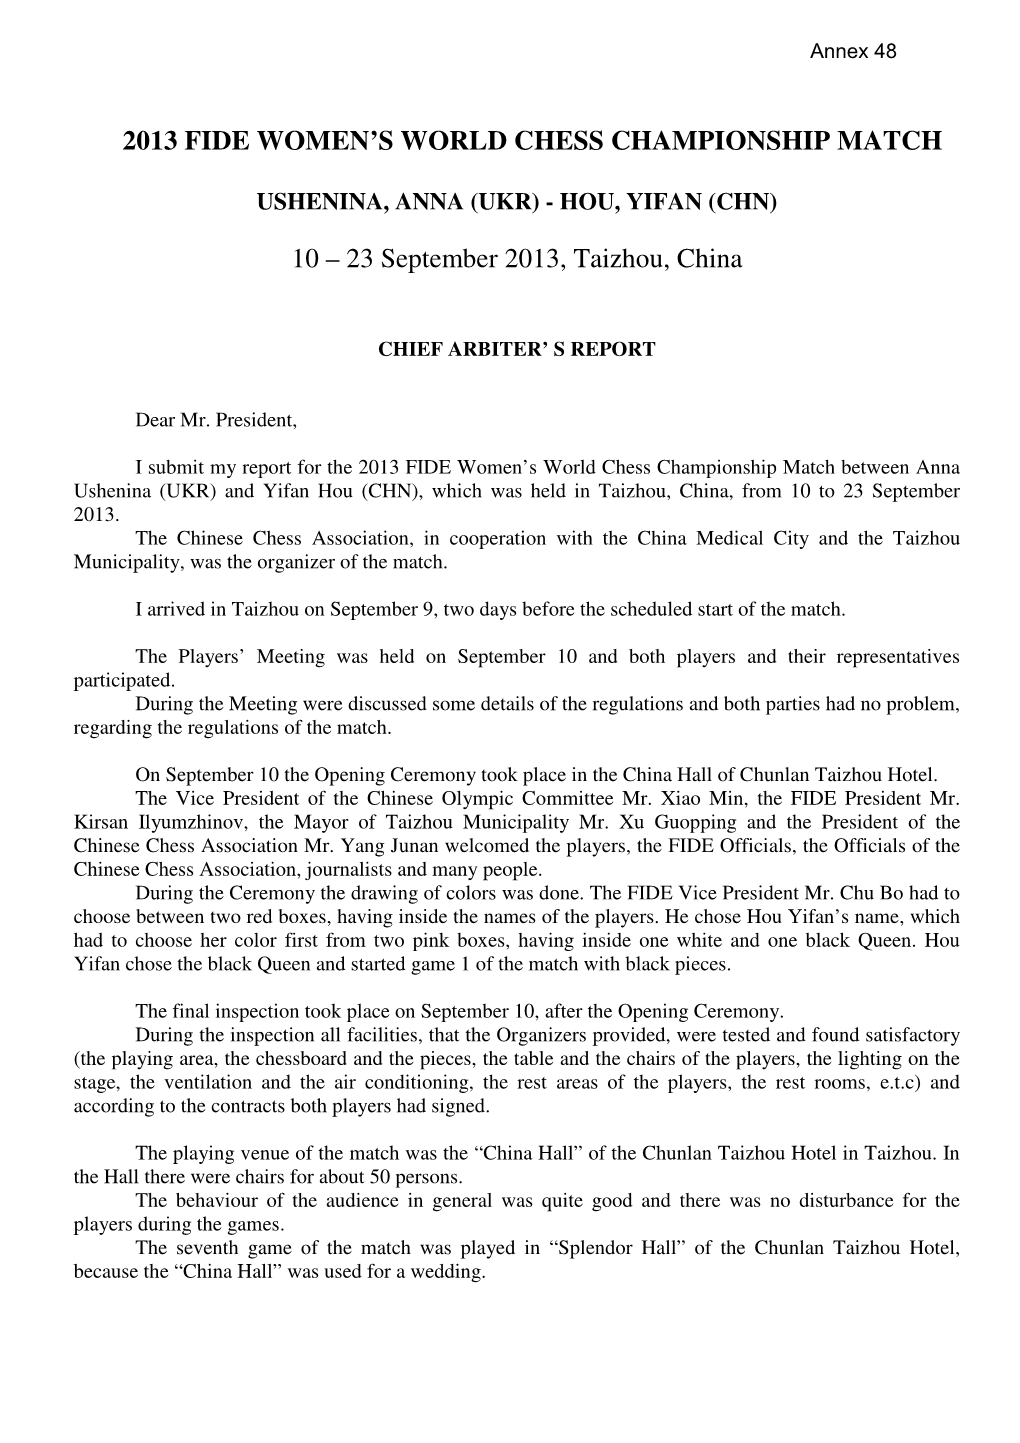 2013 FIDE WOMEN's WORLD CHESS CHAMPIONSHIP MATCH 10 – 23 September 2013, Taizhou, China